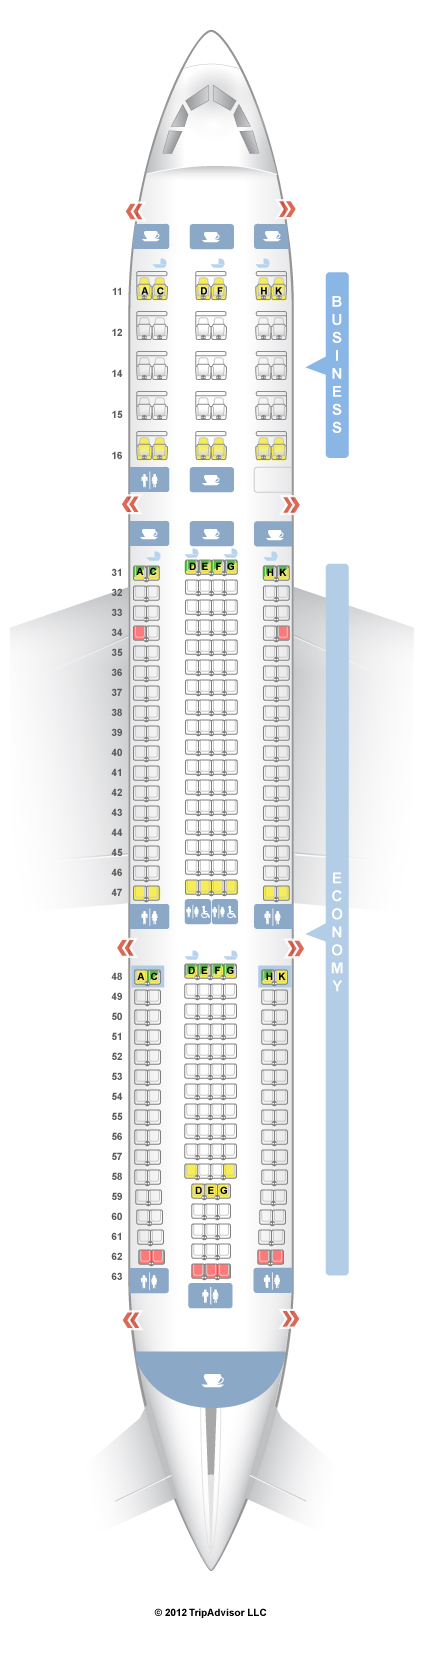 Airbus A333 Seating Chart Air Canada